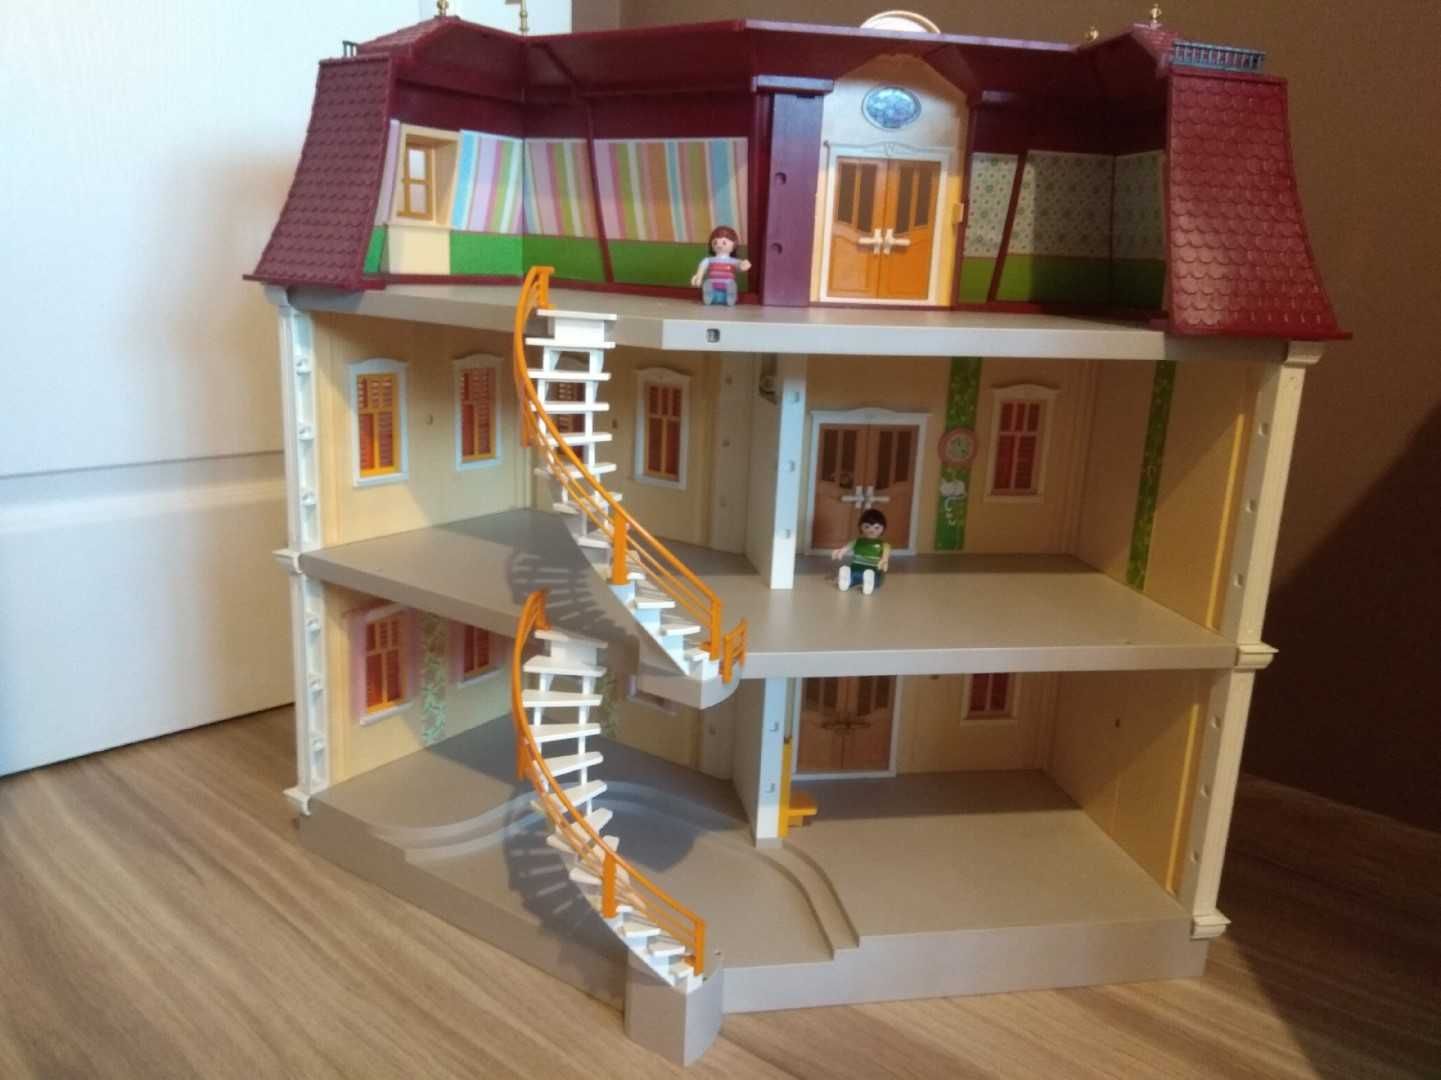 Wyjątkowy Dom dla lalek - klocki Playmobil zestaw nr 5302